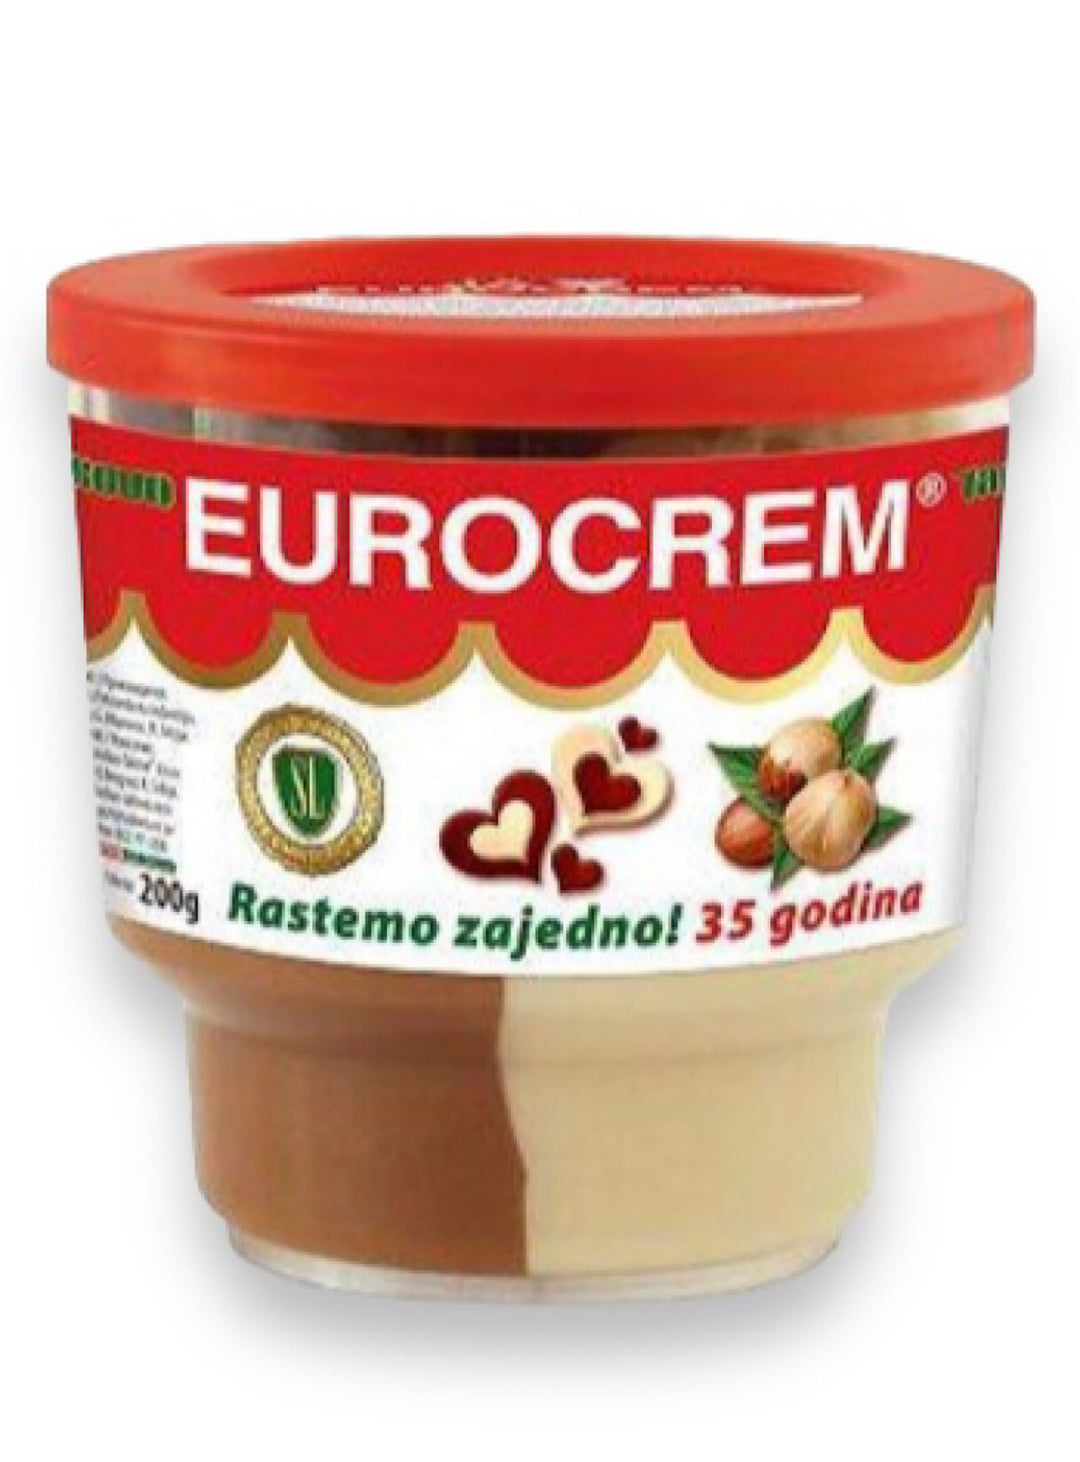 Eurocream Hazelnut Spread - Takovo - 200g